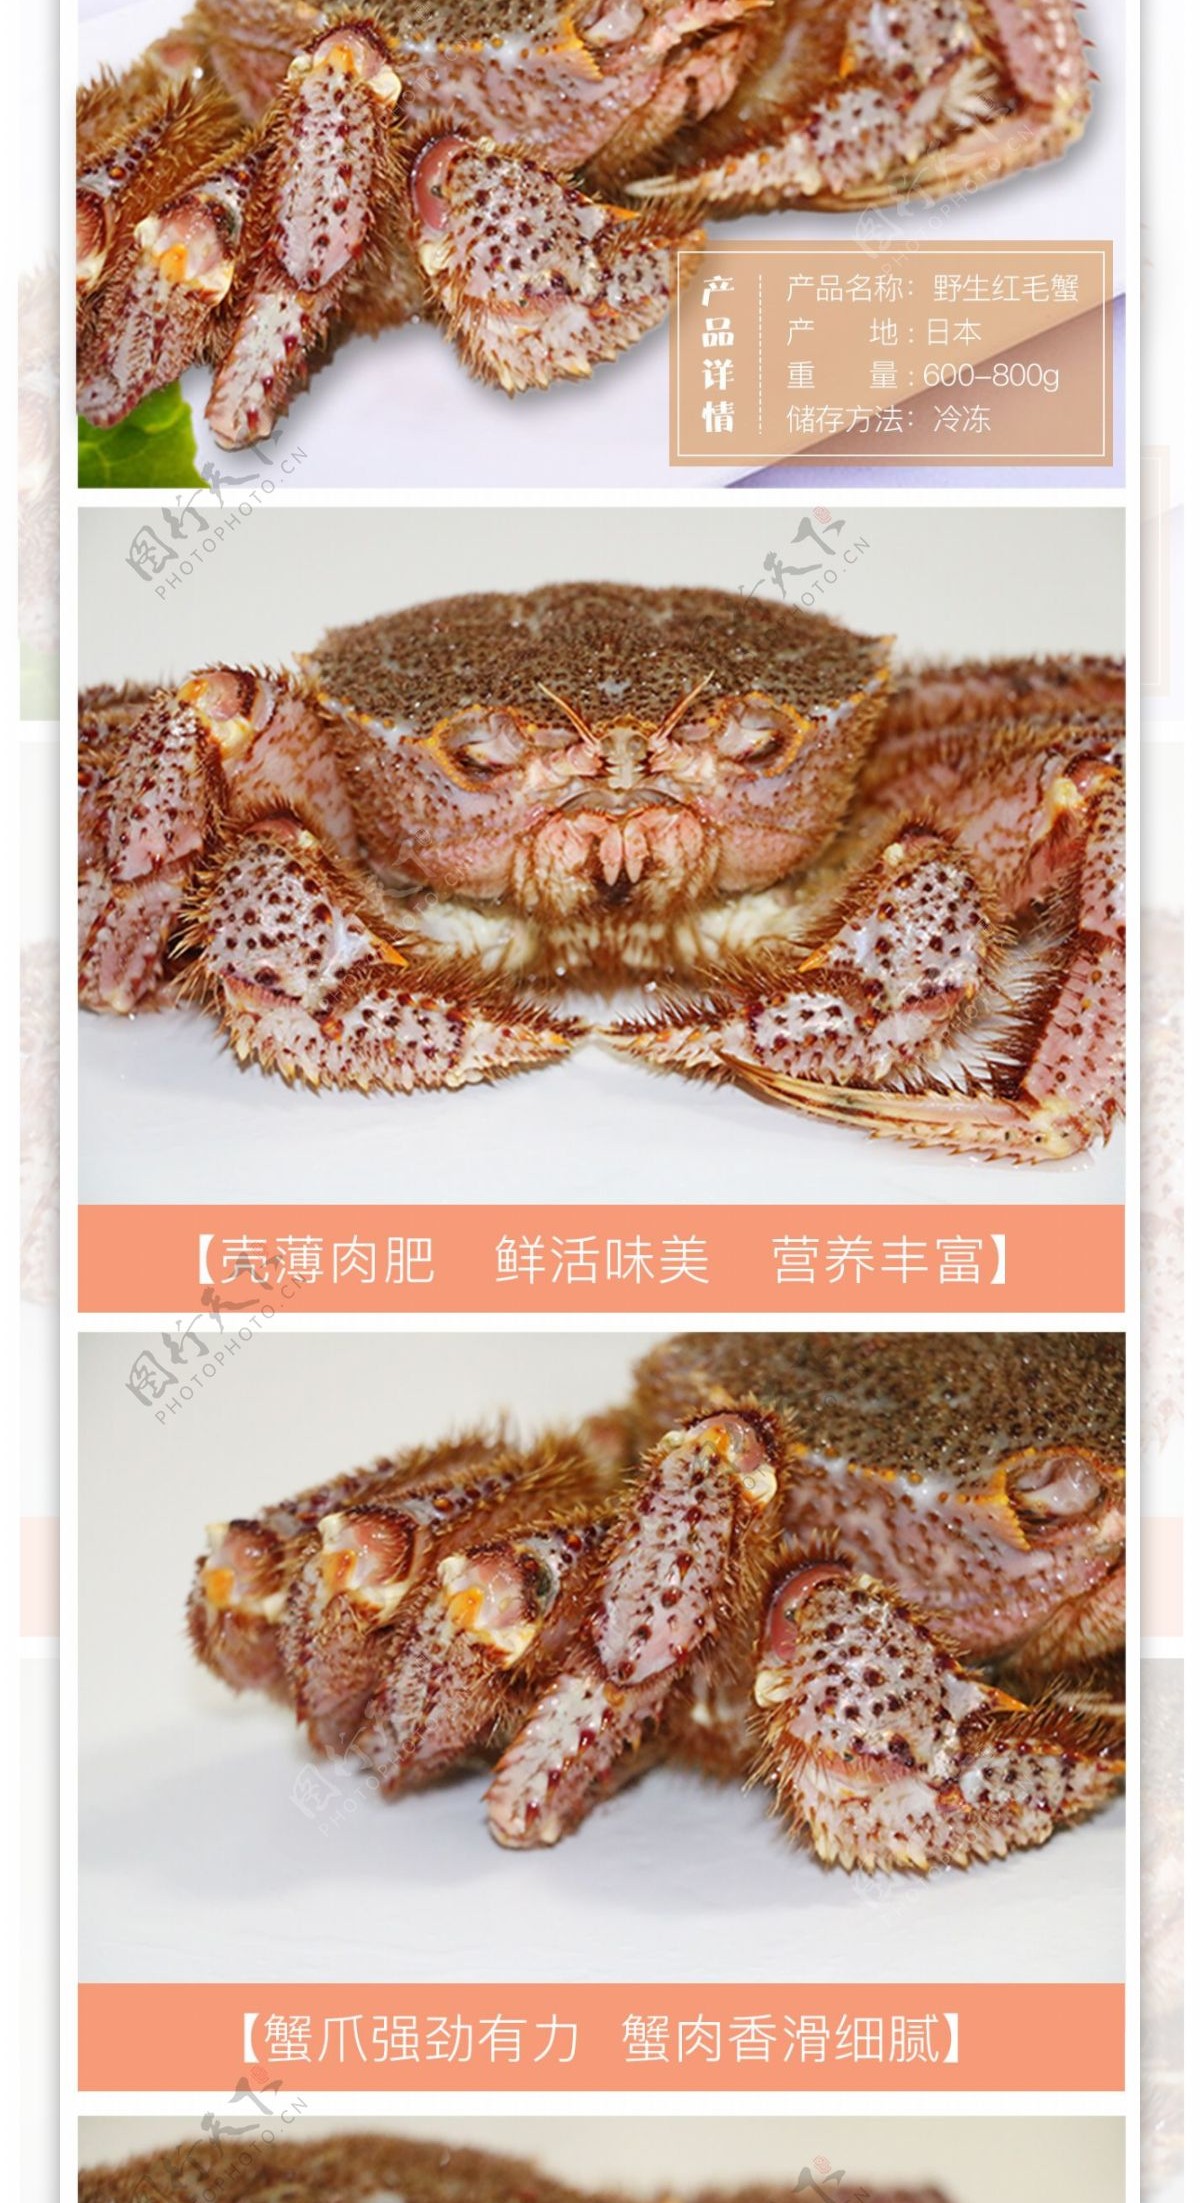 海鲜红毛蟹详情页设计